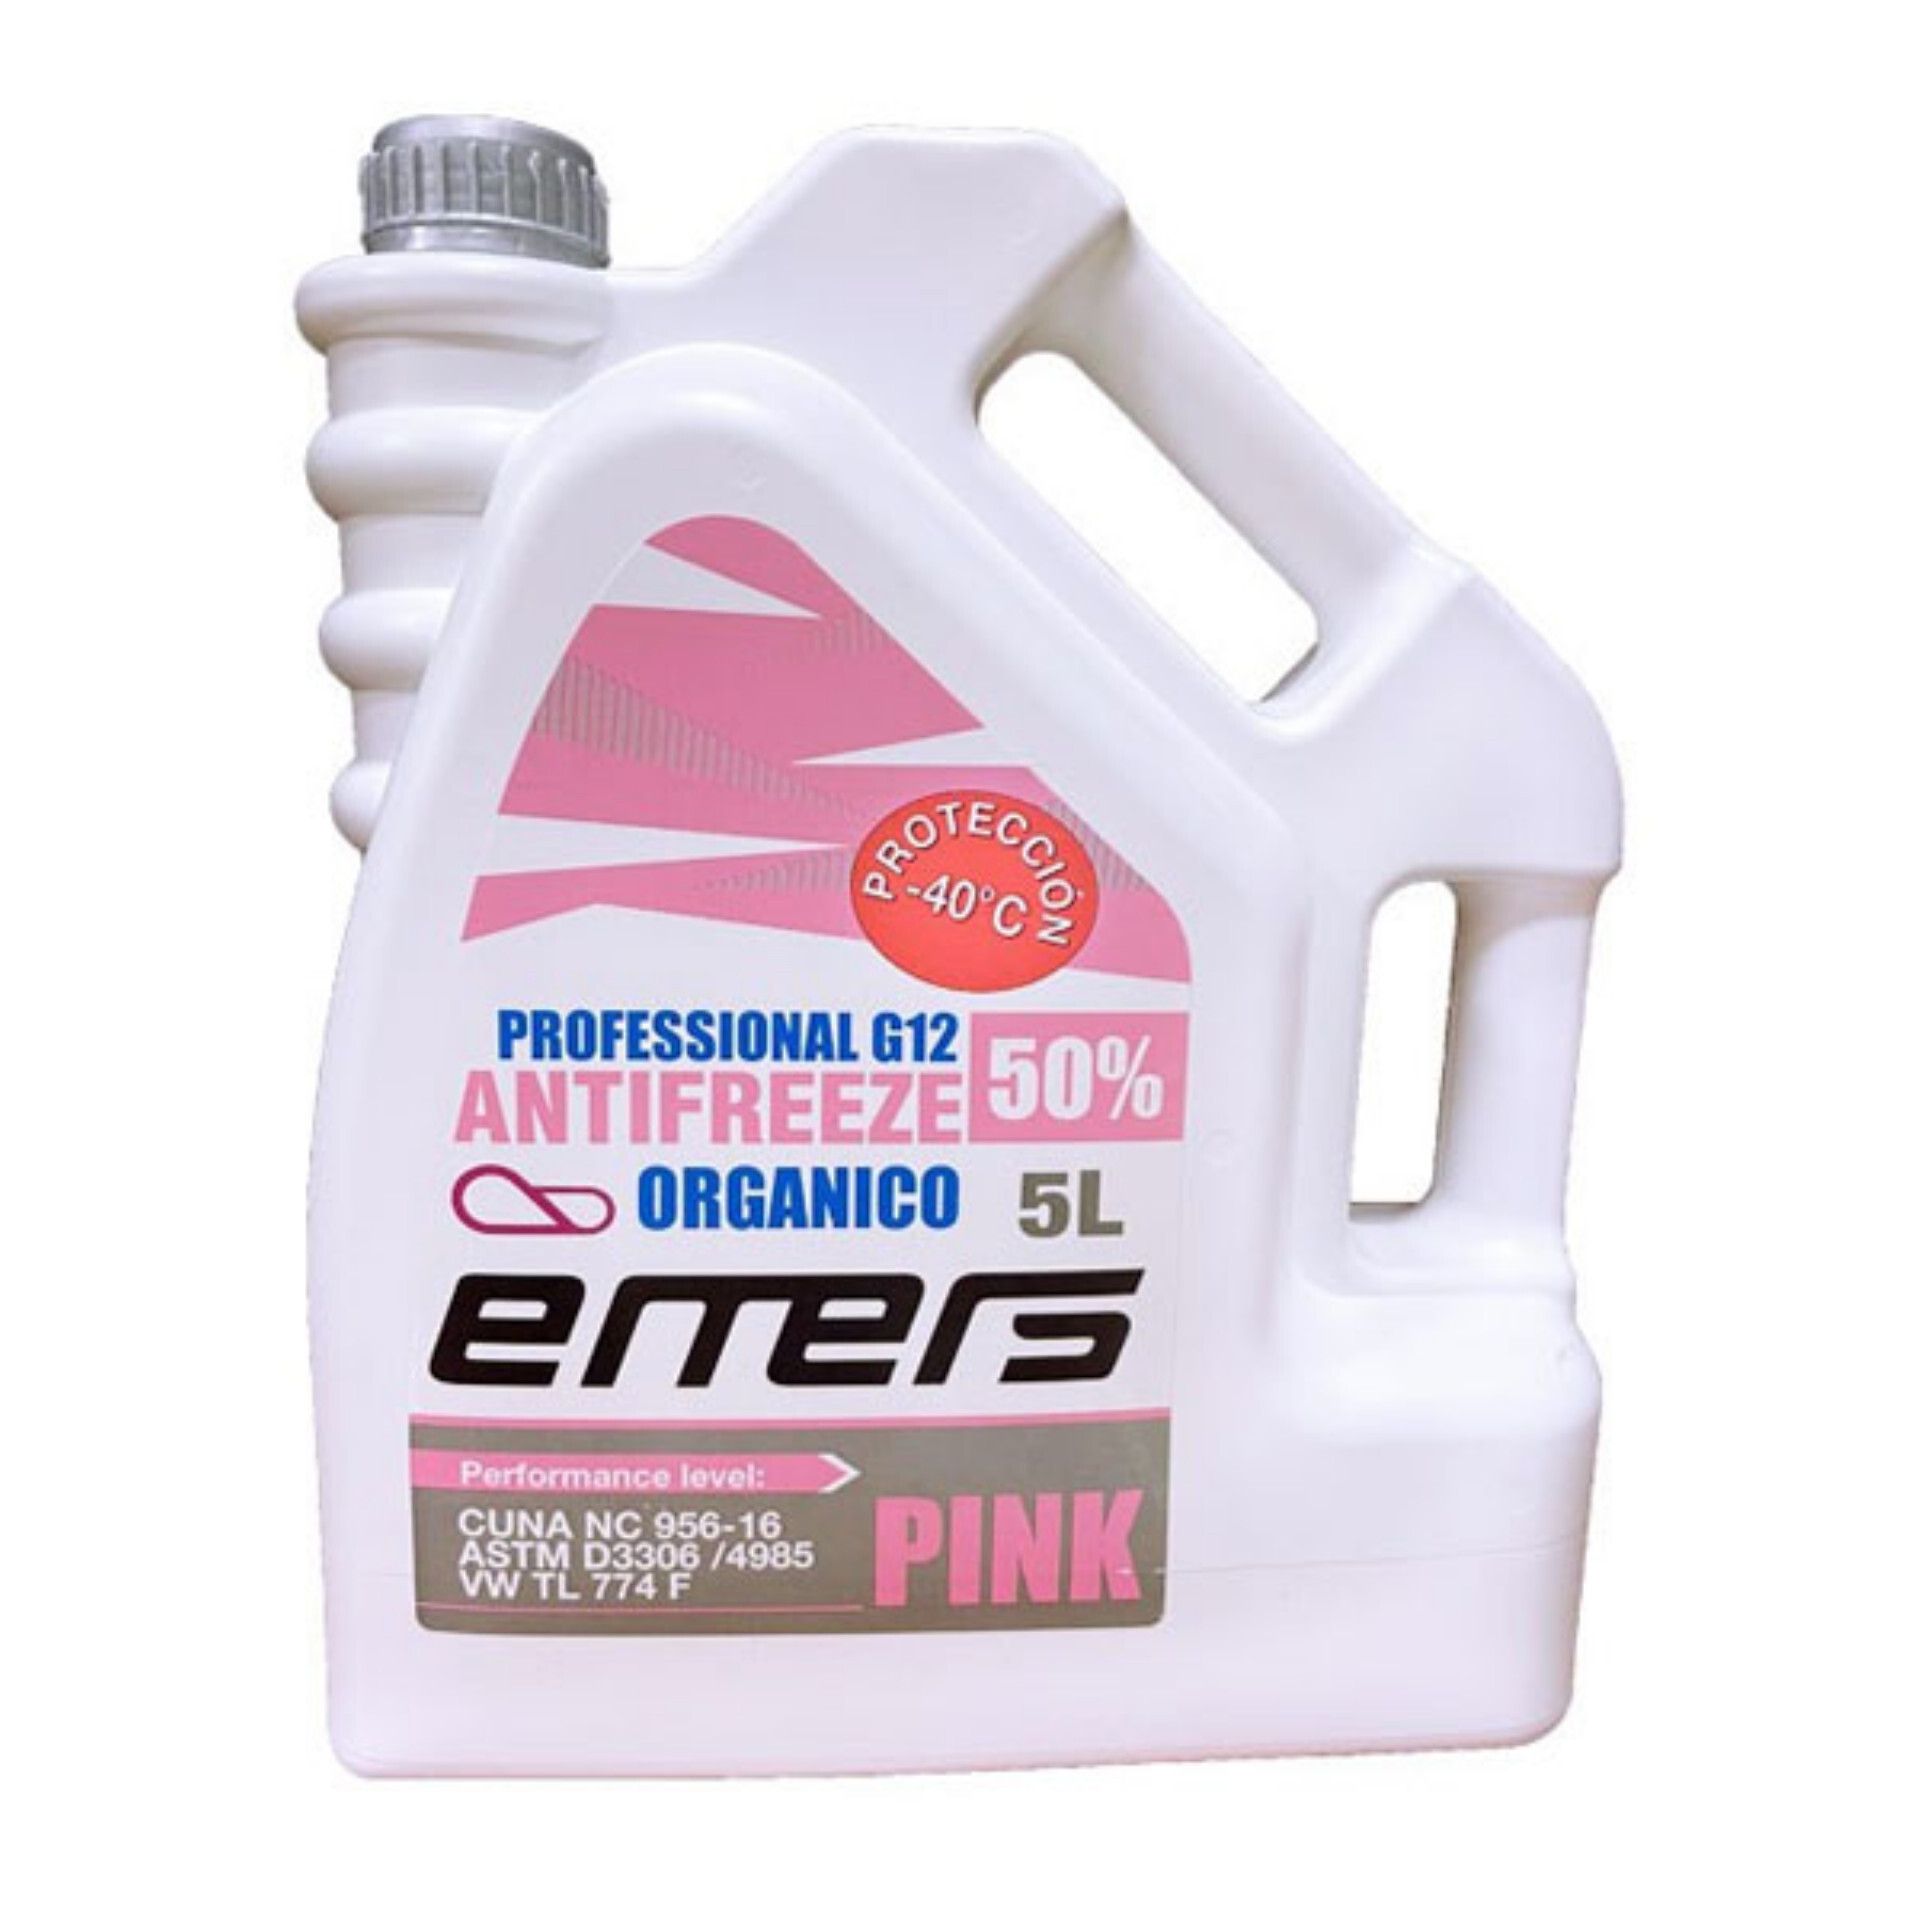 Kühlmittelflüssigkeit Motul Auto Cool Optimal Pink -37 % 5L - EuroBikes